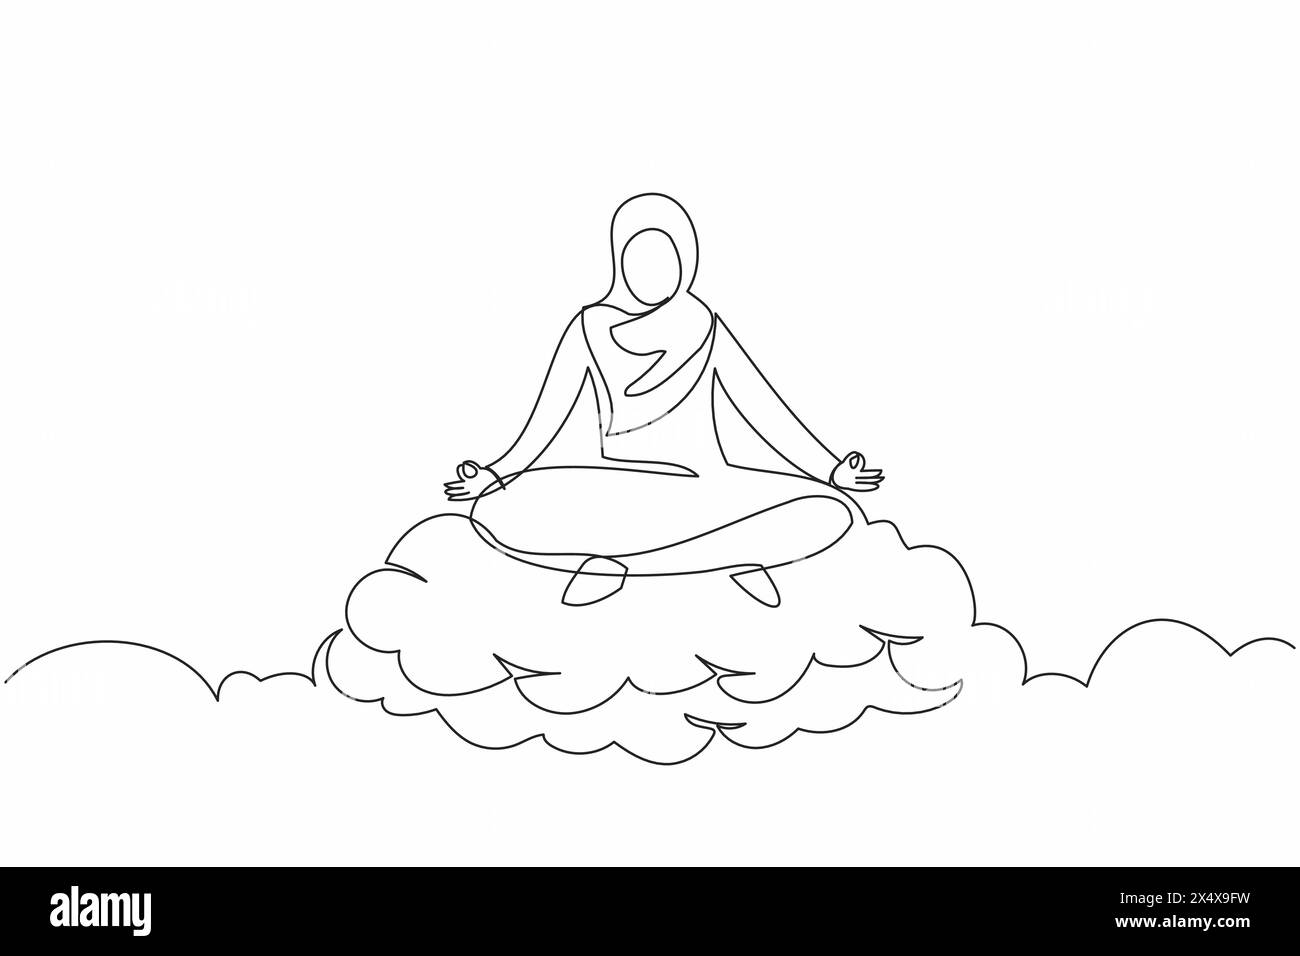 Disegno a linea singola continuo una donna d'affari araba rilassata medita in posizione di loto sulla nuvola. Riposante donna araba che si rilassa con una posa yoga. Dynami Illustrazione Vettoriale